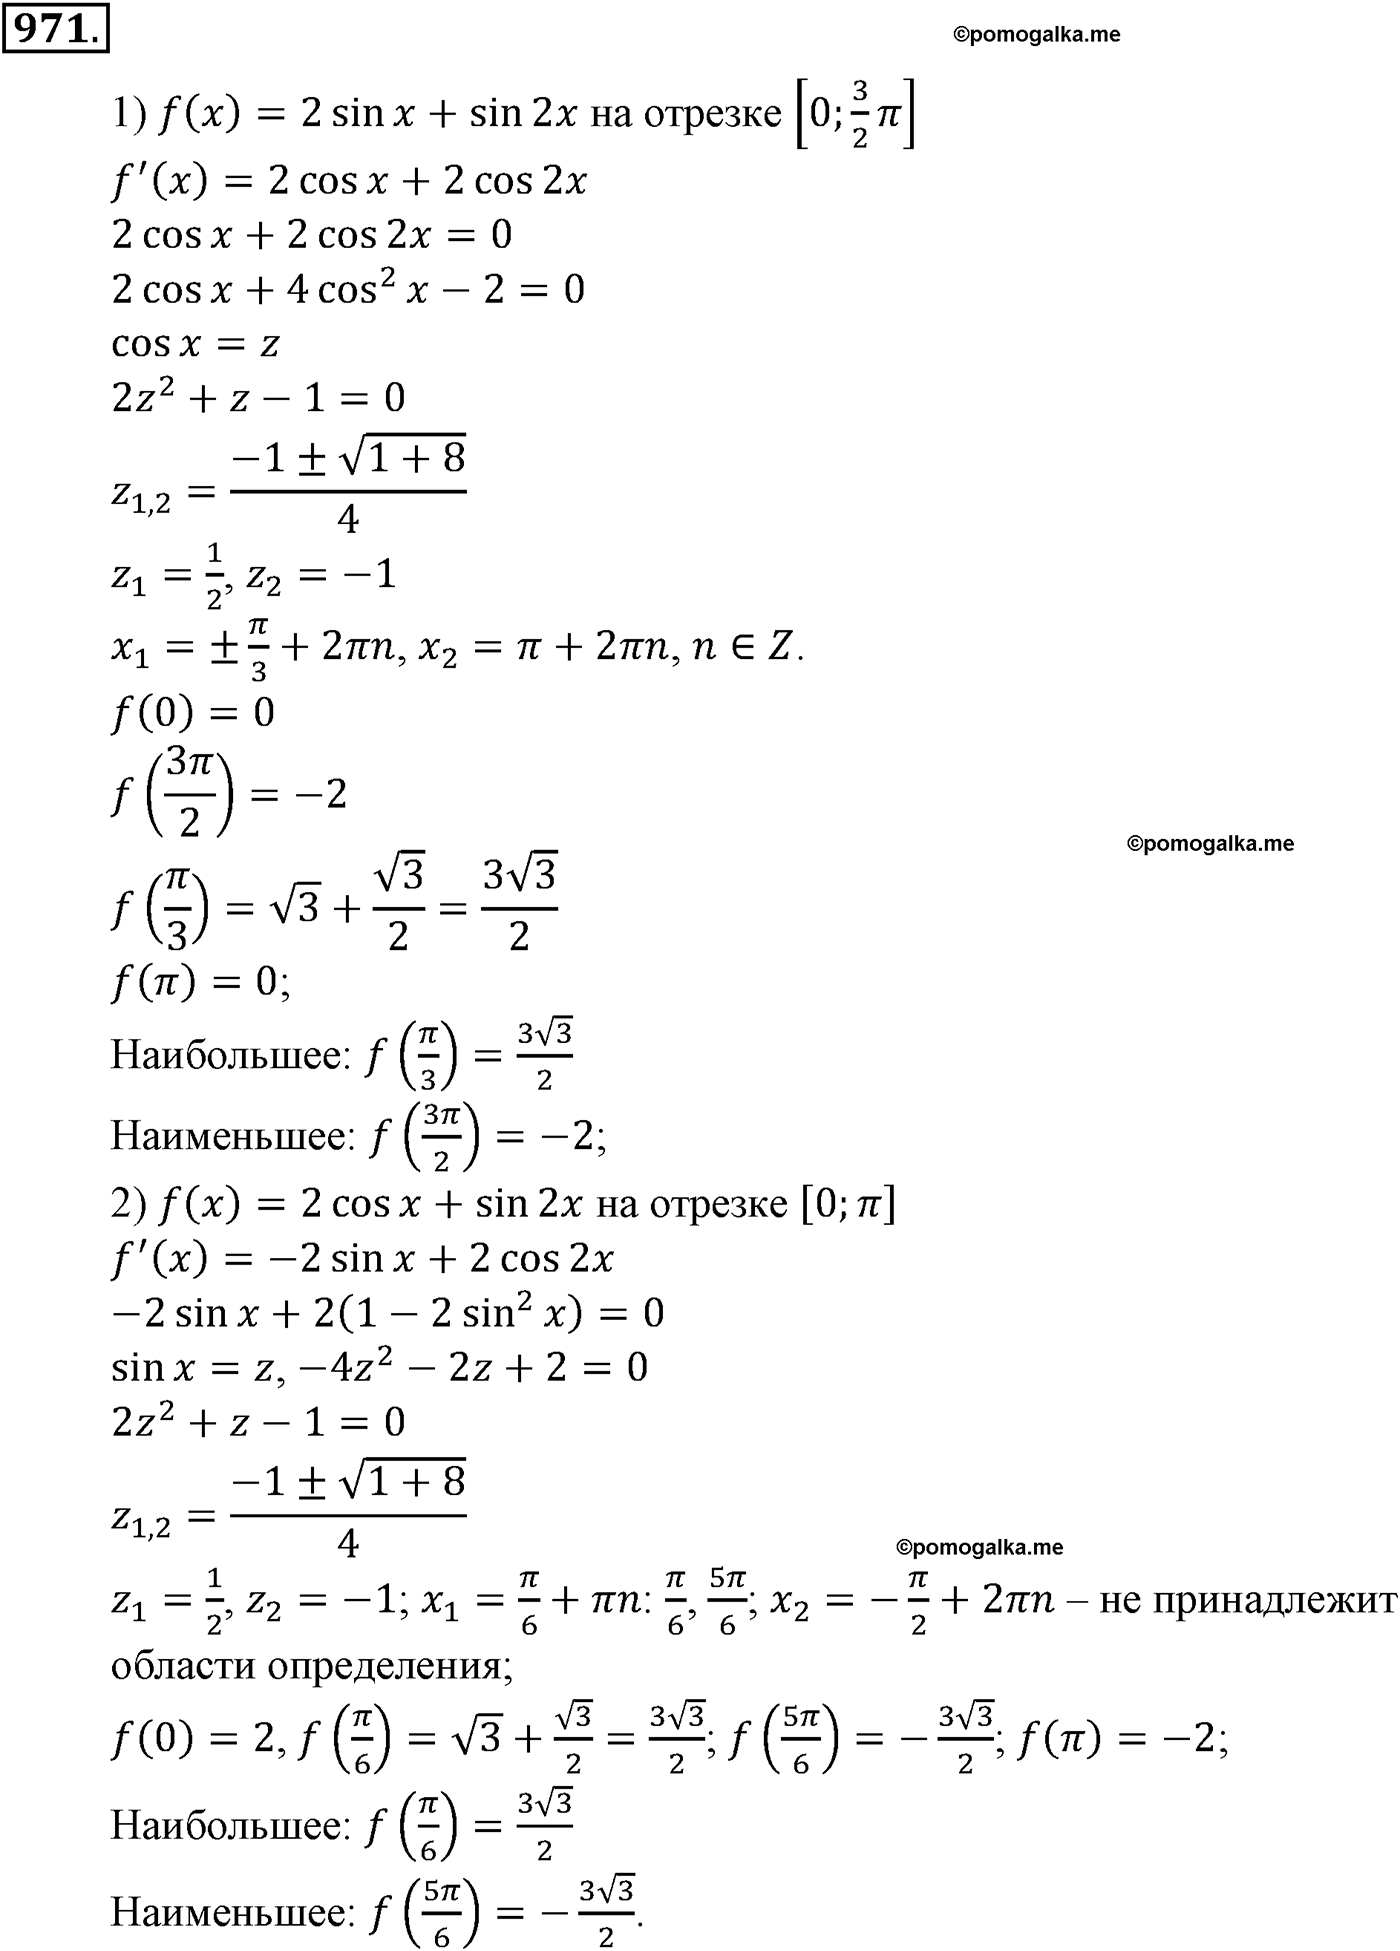 разбор задачи №971 по алгебре за 10-11 класс из учебника Алимова, Колягина